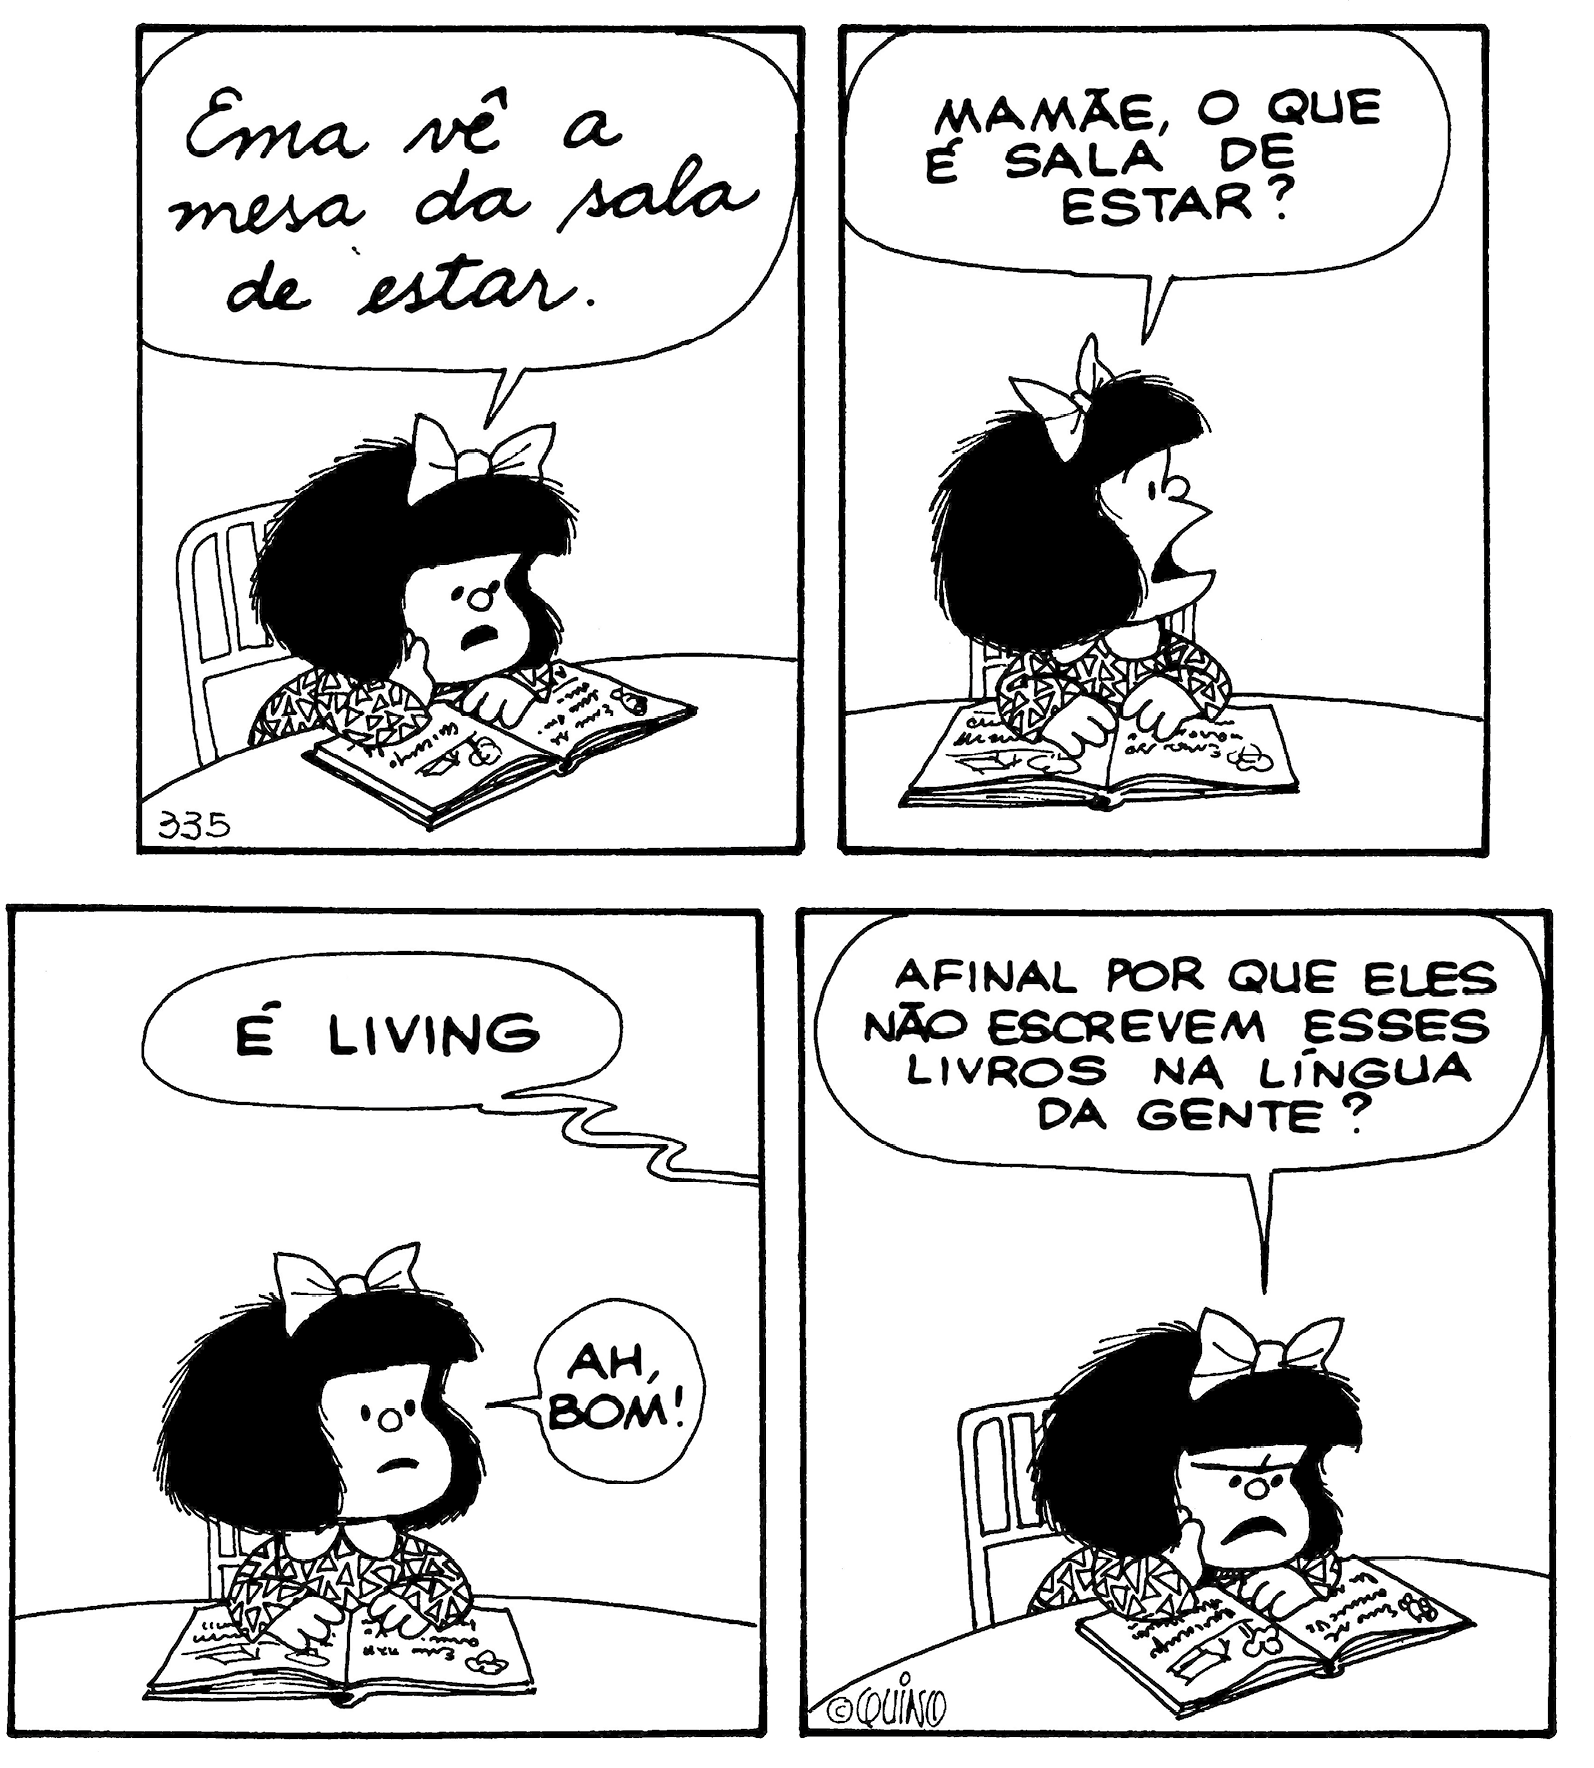 Tirinha. Composta por quatro quadros, apresenta como personagem Mafalda: menina baixa com cabelos escuros armados, curtos, laço sobre a cabeça, vestido de mangas compridas e de gola. As cenas se passam em local com mesa e cadeira, onde Mafalda está sentada com um livro a sua frente. Quadro um: Mafalda de frente para a mesa, com a mão direita sobre o livro aberto, lendo-o em voz alta: EMA VÊ A MESA DA SALA DE ESTAR. Quadro dois: Mafalda com as mãos sobre o livro, olhando para a direita, diz: MAMÃE, O QUE É SALA DE ESTAR? Quadro três: Mafalda olha para frente, com os olhos bem abertos, boca um pouco para baixo. Alguém fora do quadro diz: É LIVING. Mafalda, exclama: AH, BOM! Quadro quatro: Mafalda, com a cabeça para o livro, cenho franzido, boca aberta para baixo, pergunta: AFINAL POR QUE ELES NÃO ESCREVEM ESSES LIVROS NA LÍNGUA DA GENTE?